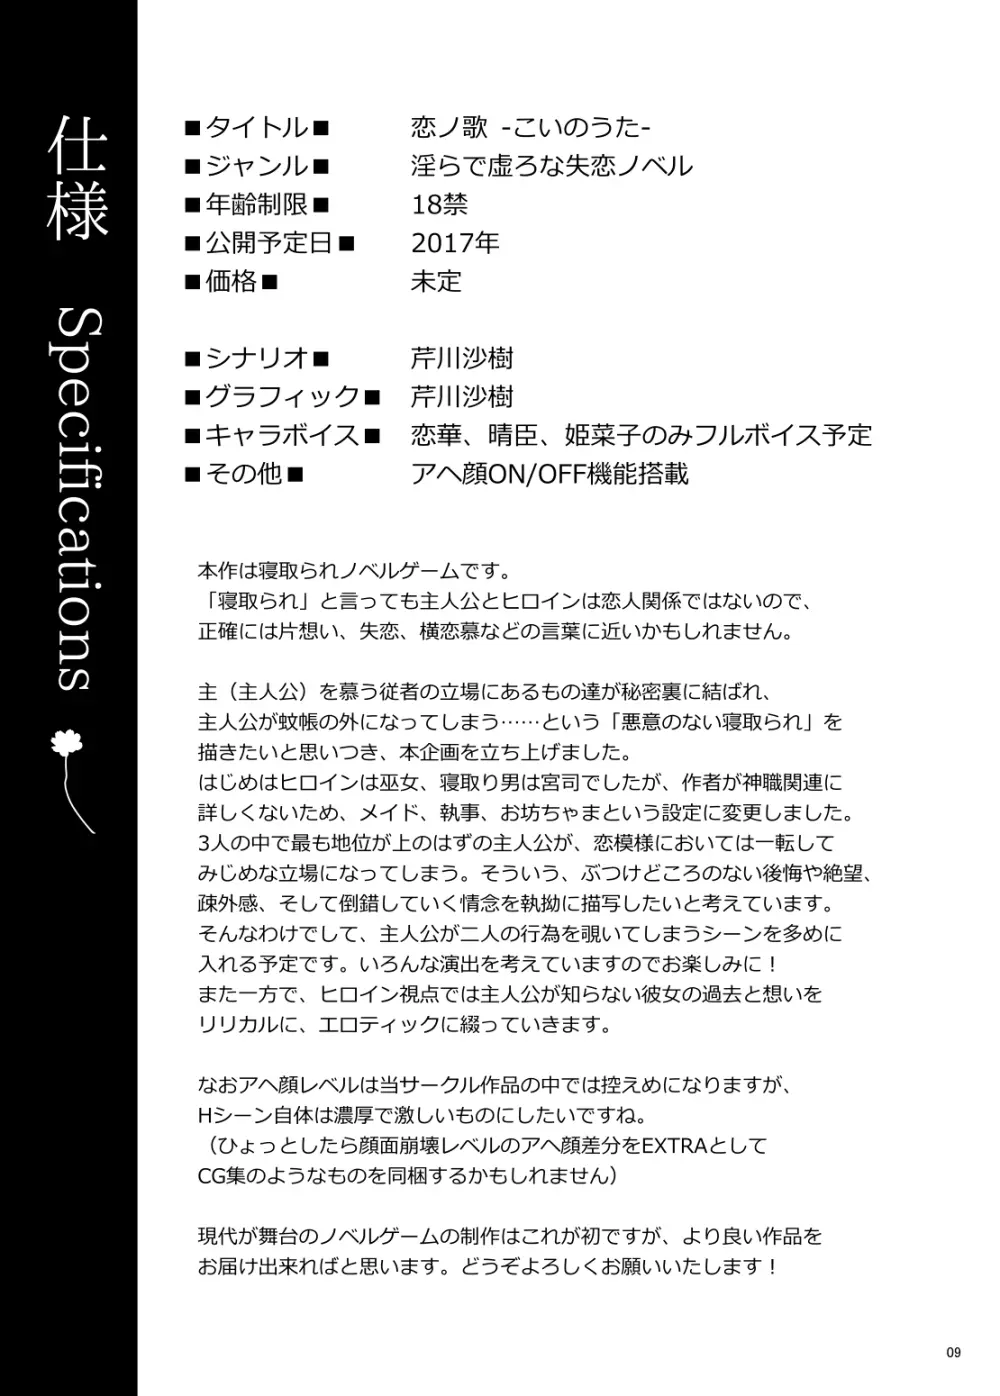 恋ノ歌 Preview Book 9ページ